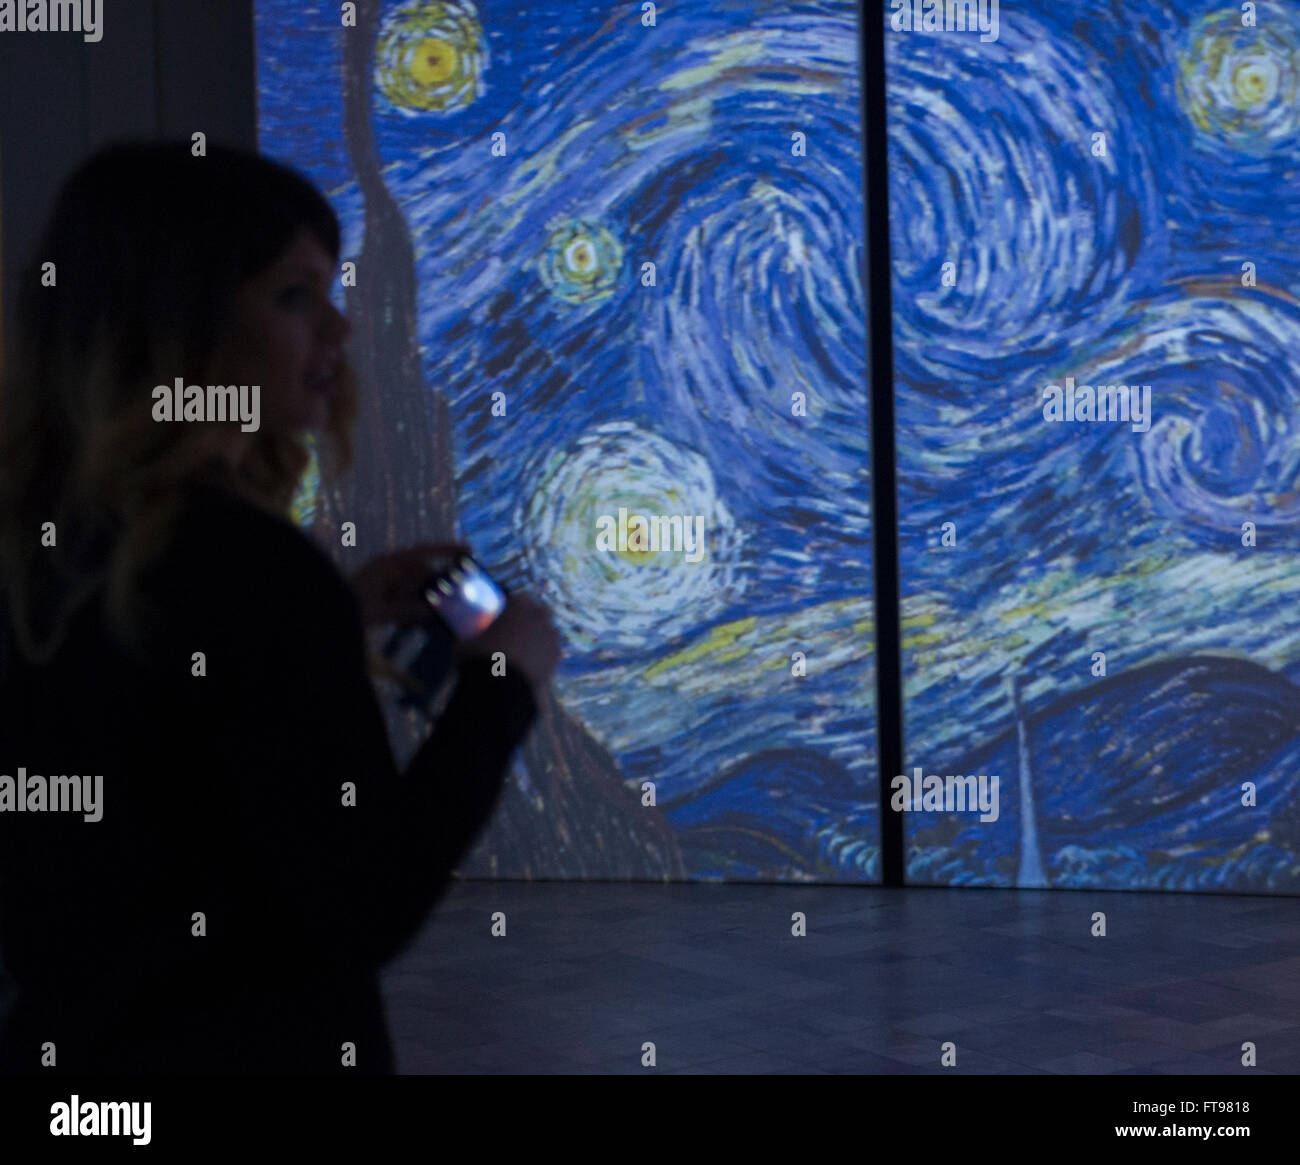 Turin, Italie. 25 mars, 2016. Une exposition d'art multimédia intitulée "Van Gogh en vie" présentant le travail du peintre Vincent Van Gogh, le 25 mars 2016 à Turin, Italie Crédit : Stefano Guidi/Alamy Live News Banque D'Images